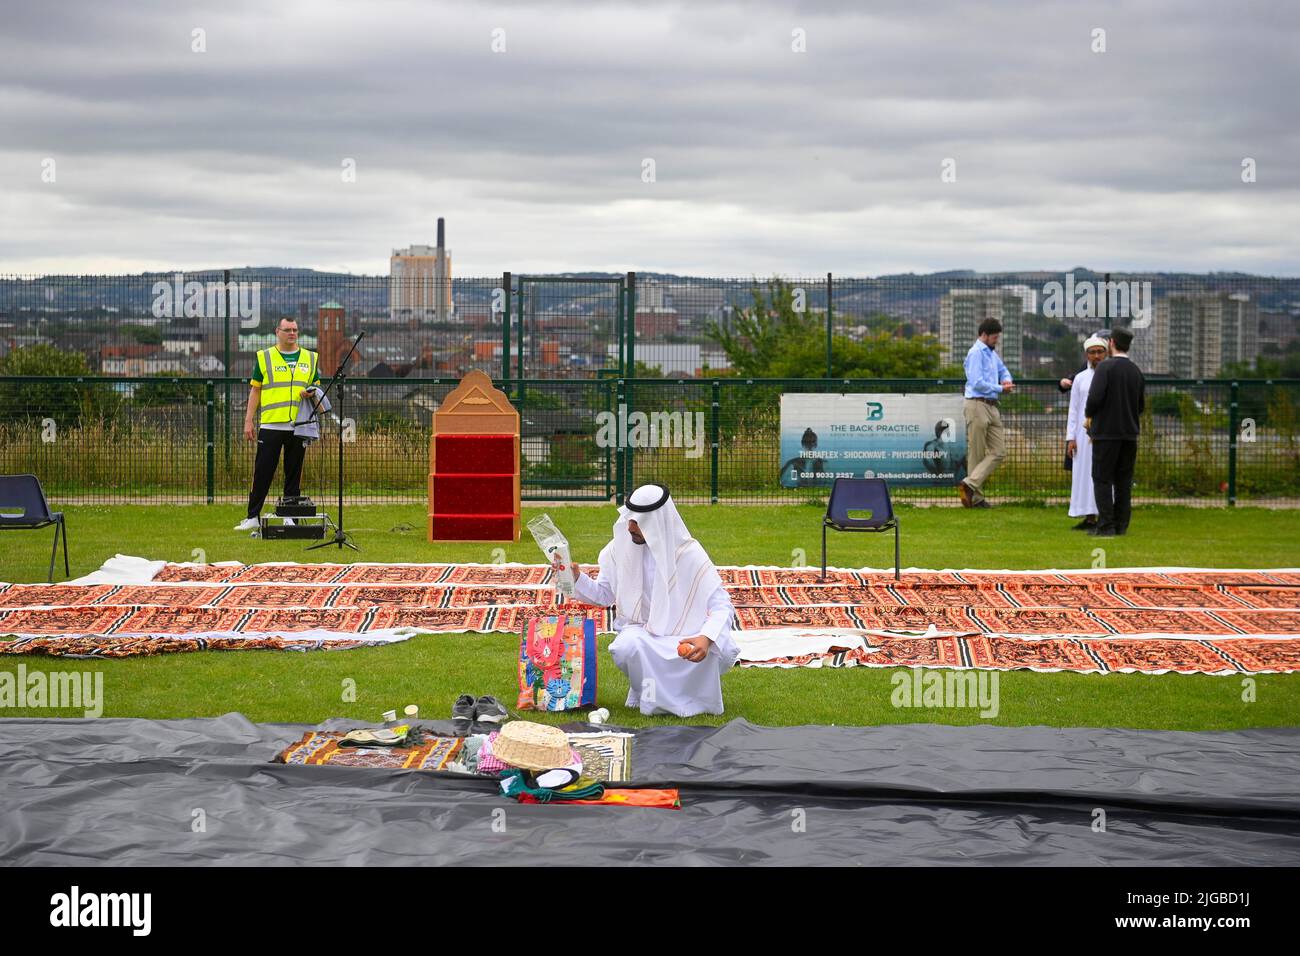 Un hombre reúne su pertenencia después del festival Eid en los terrenos de Davitt Park GAA en Belfast. El festival Eid es un día importante en el calendario musulmán cuando la comida se comparte con parientes, amigos y pobres. Fecha de la foto: Sábado 9 de julio de 2022. Foto de stock